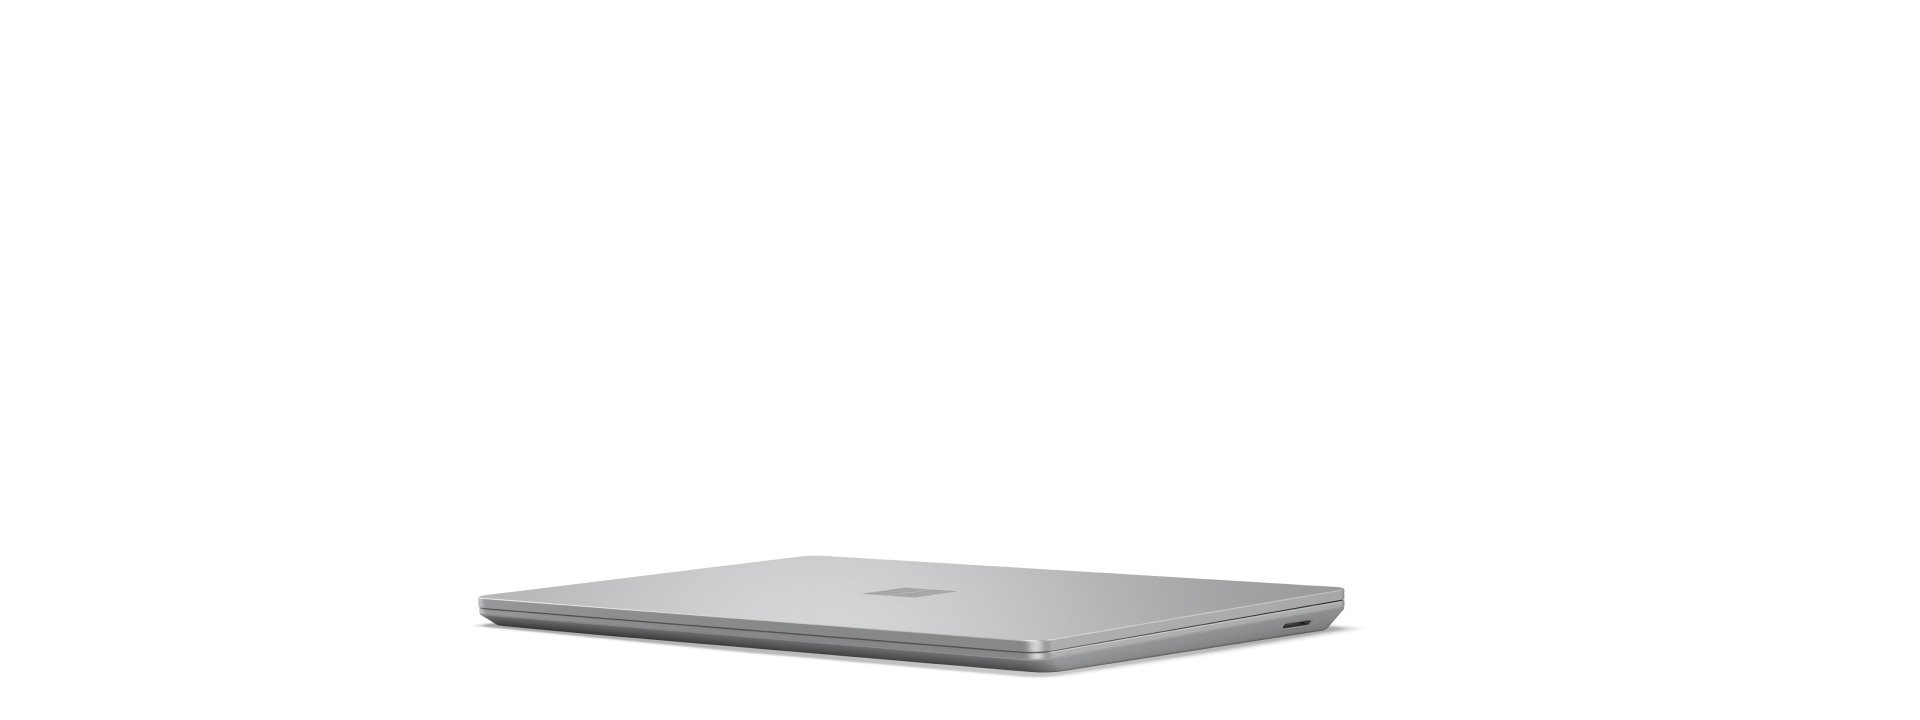 Startbild zum Drehen des Surface Laptop Go 3 beim Öffnen und Schließen, wobei alle Winkel des Geräts gezeigt werden.